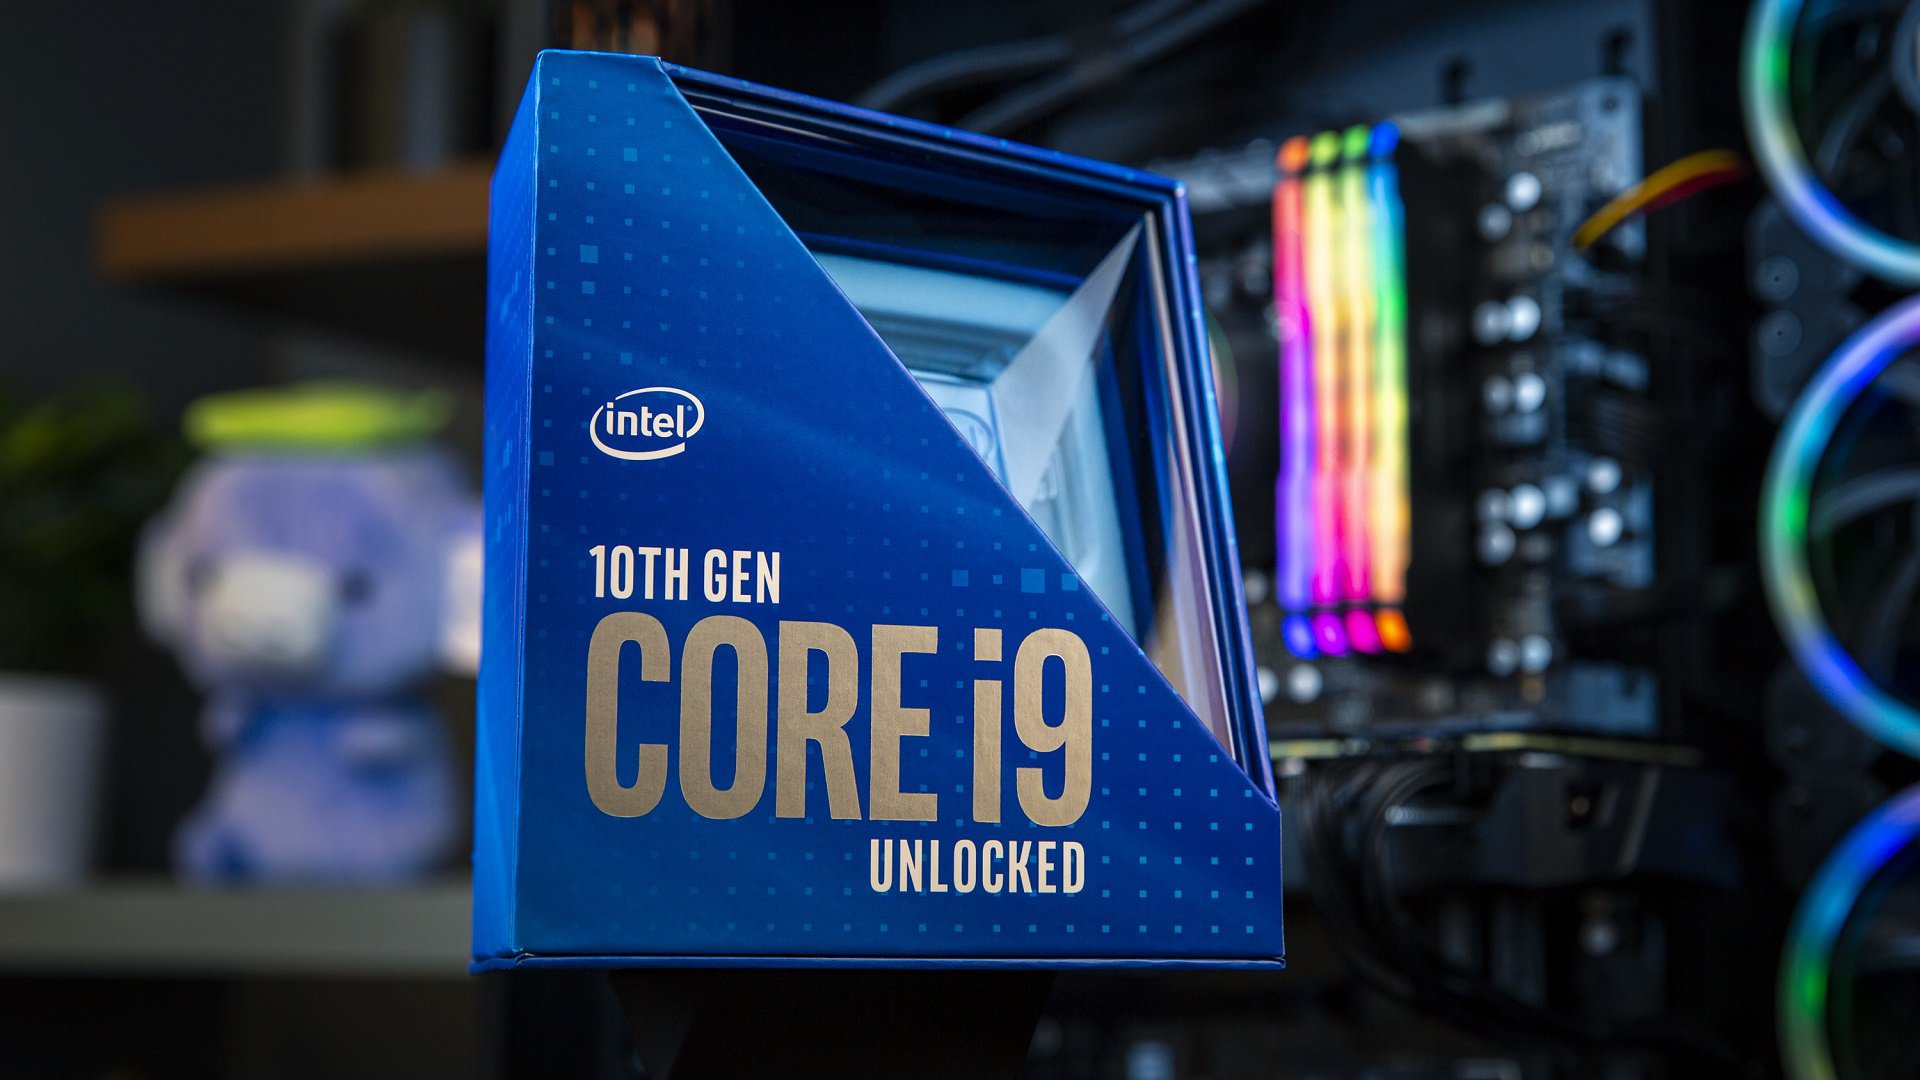 پردازنده رده حرفه ای Intel Core i9 10900K به همراه بسته بندی 